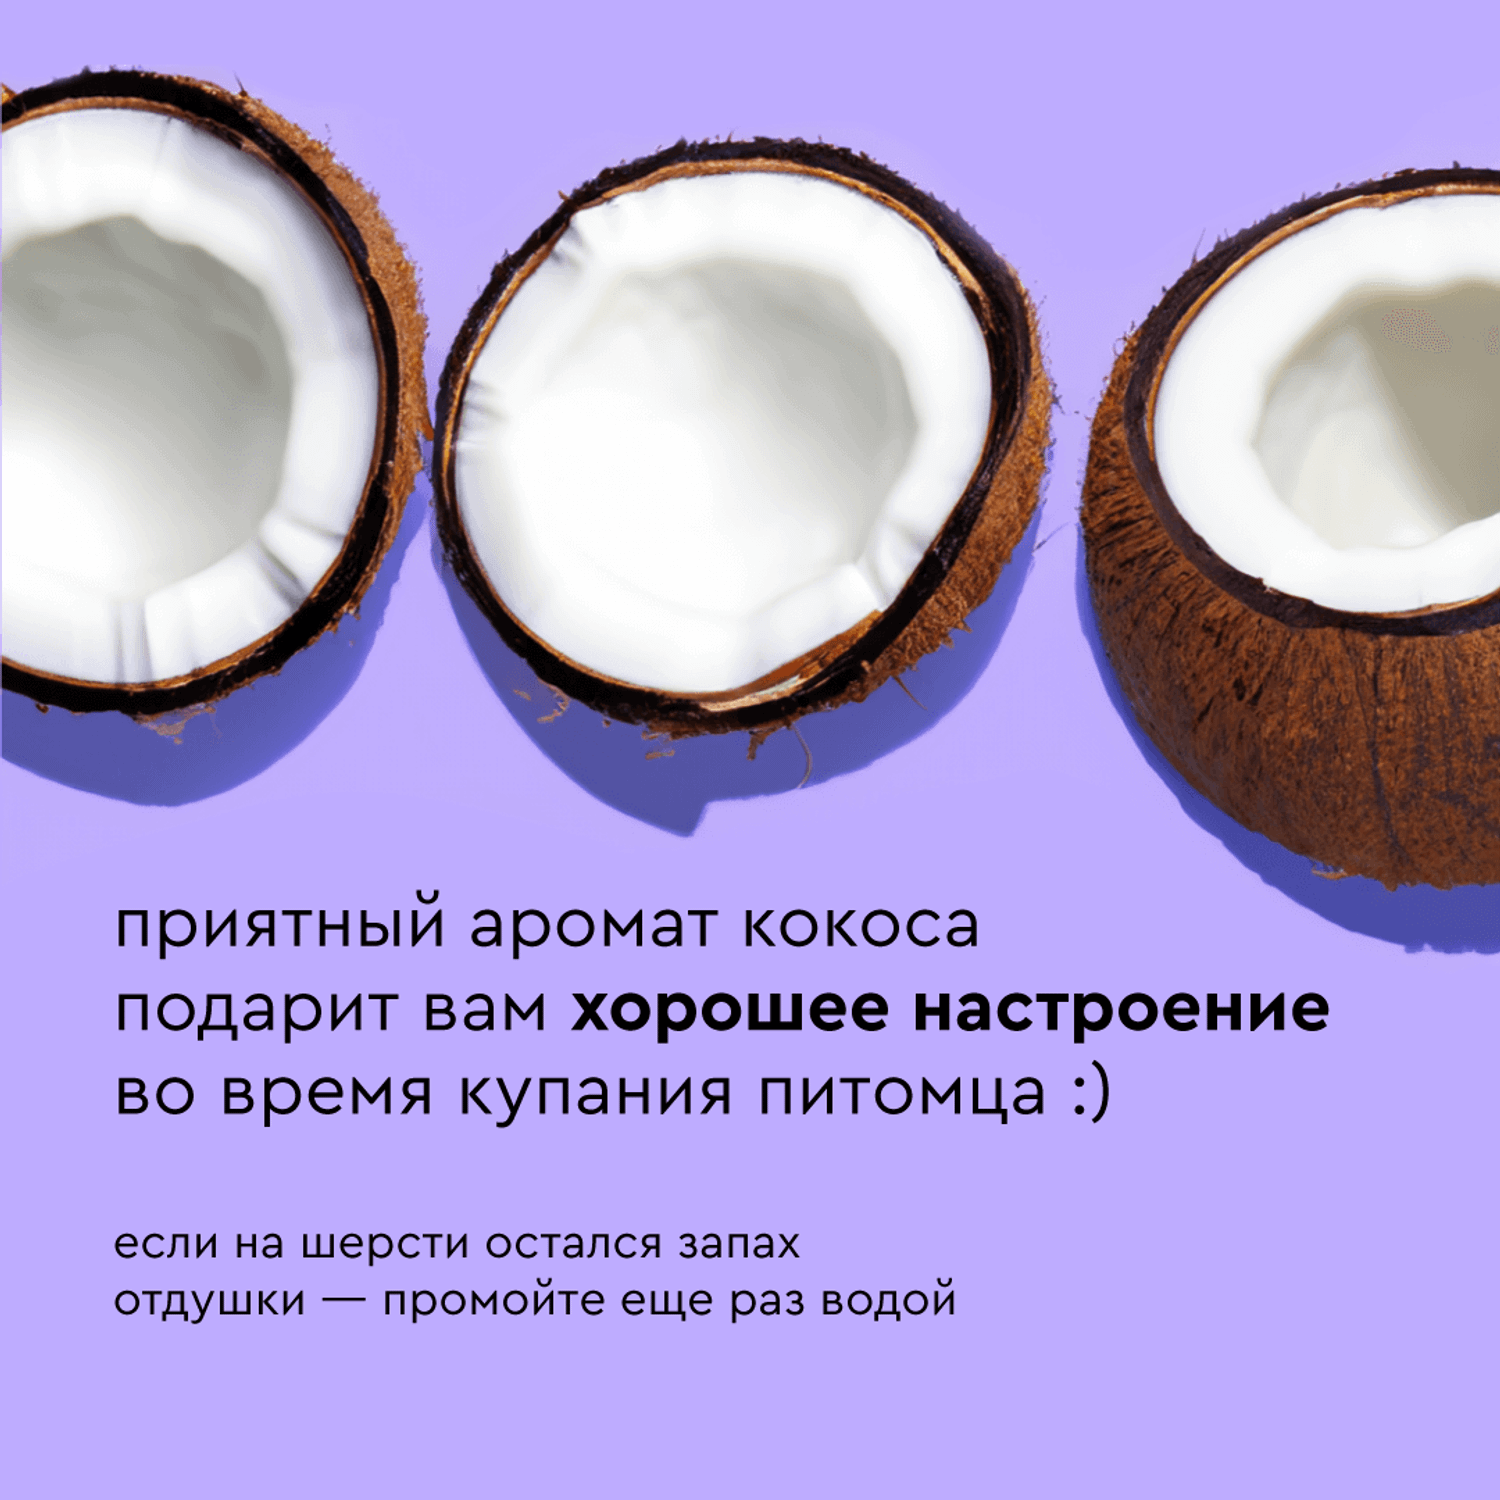 Шампунь с ароматом кокоса Pamilee домашний увлажняющий универсальный - фото 2